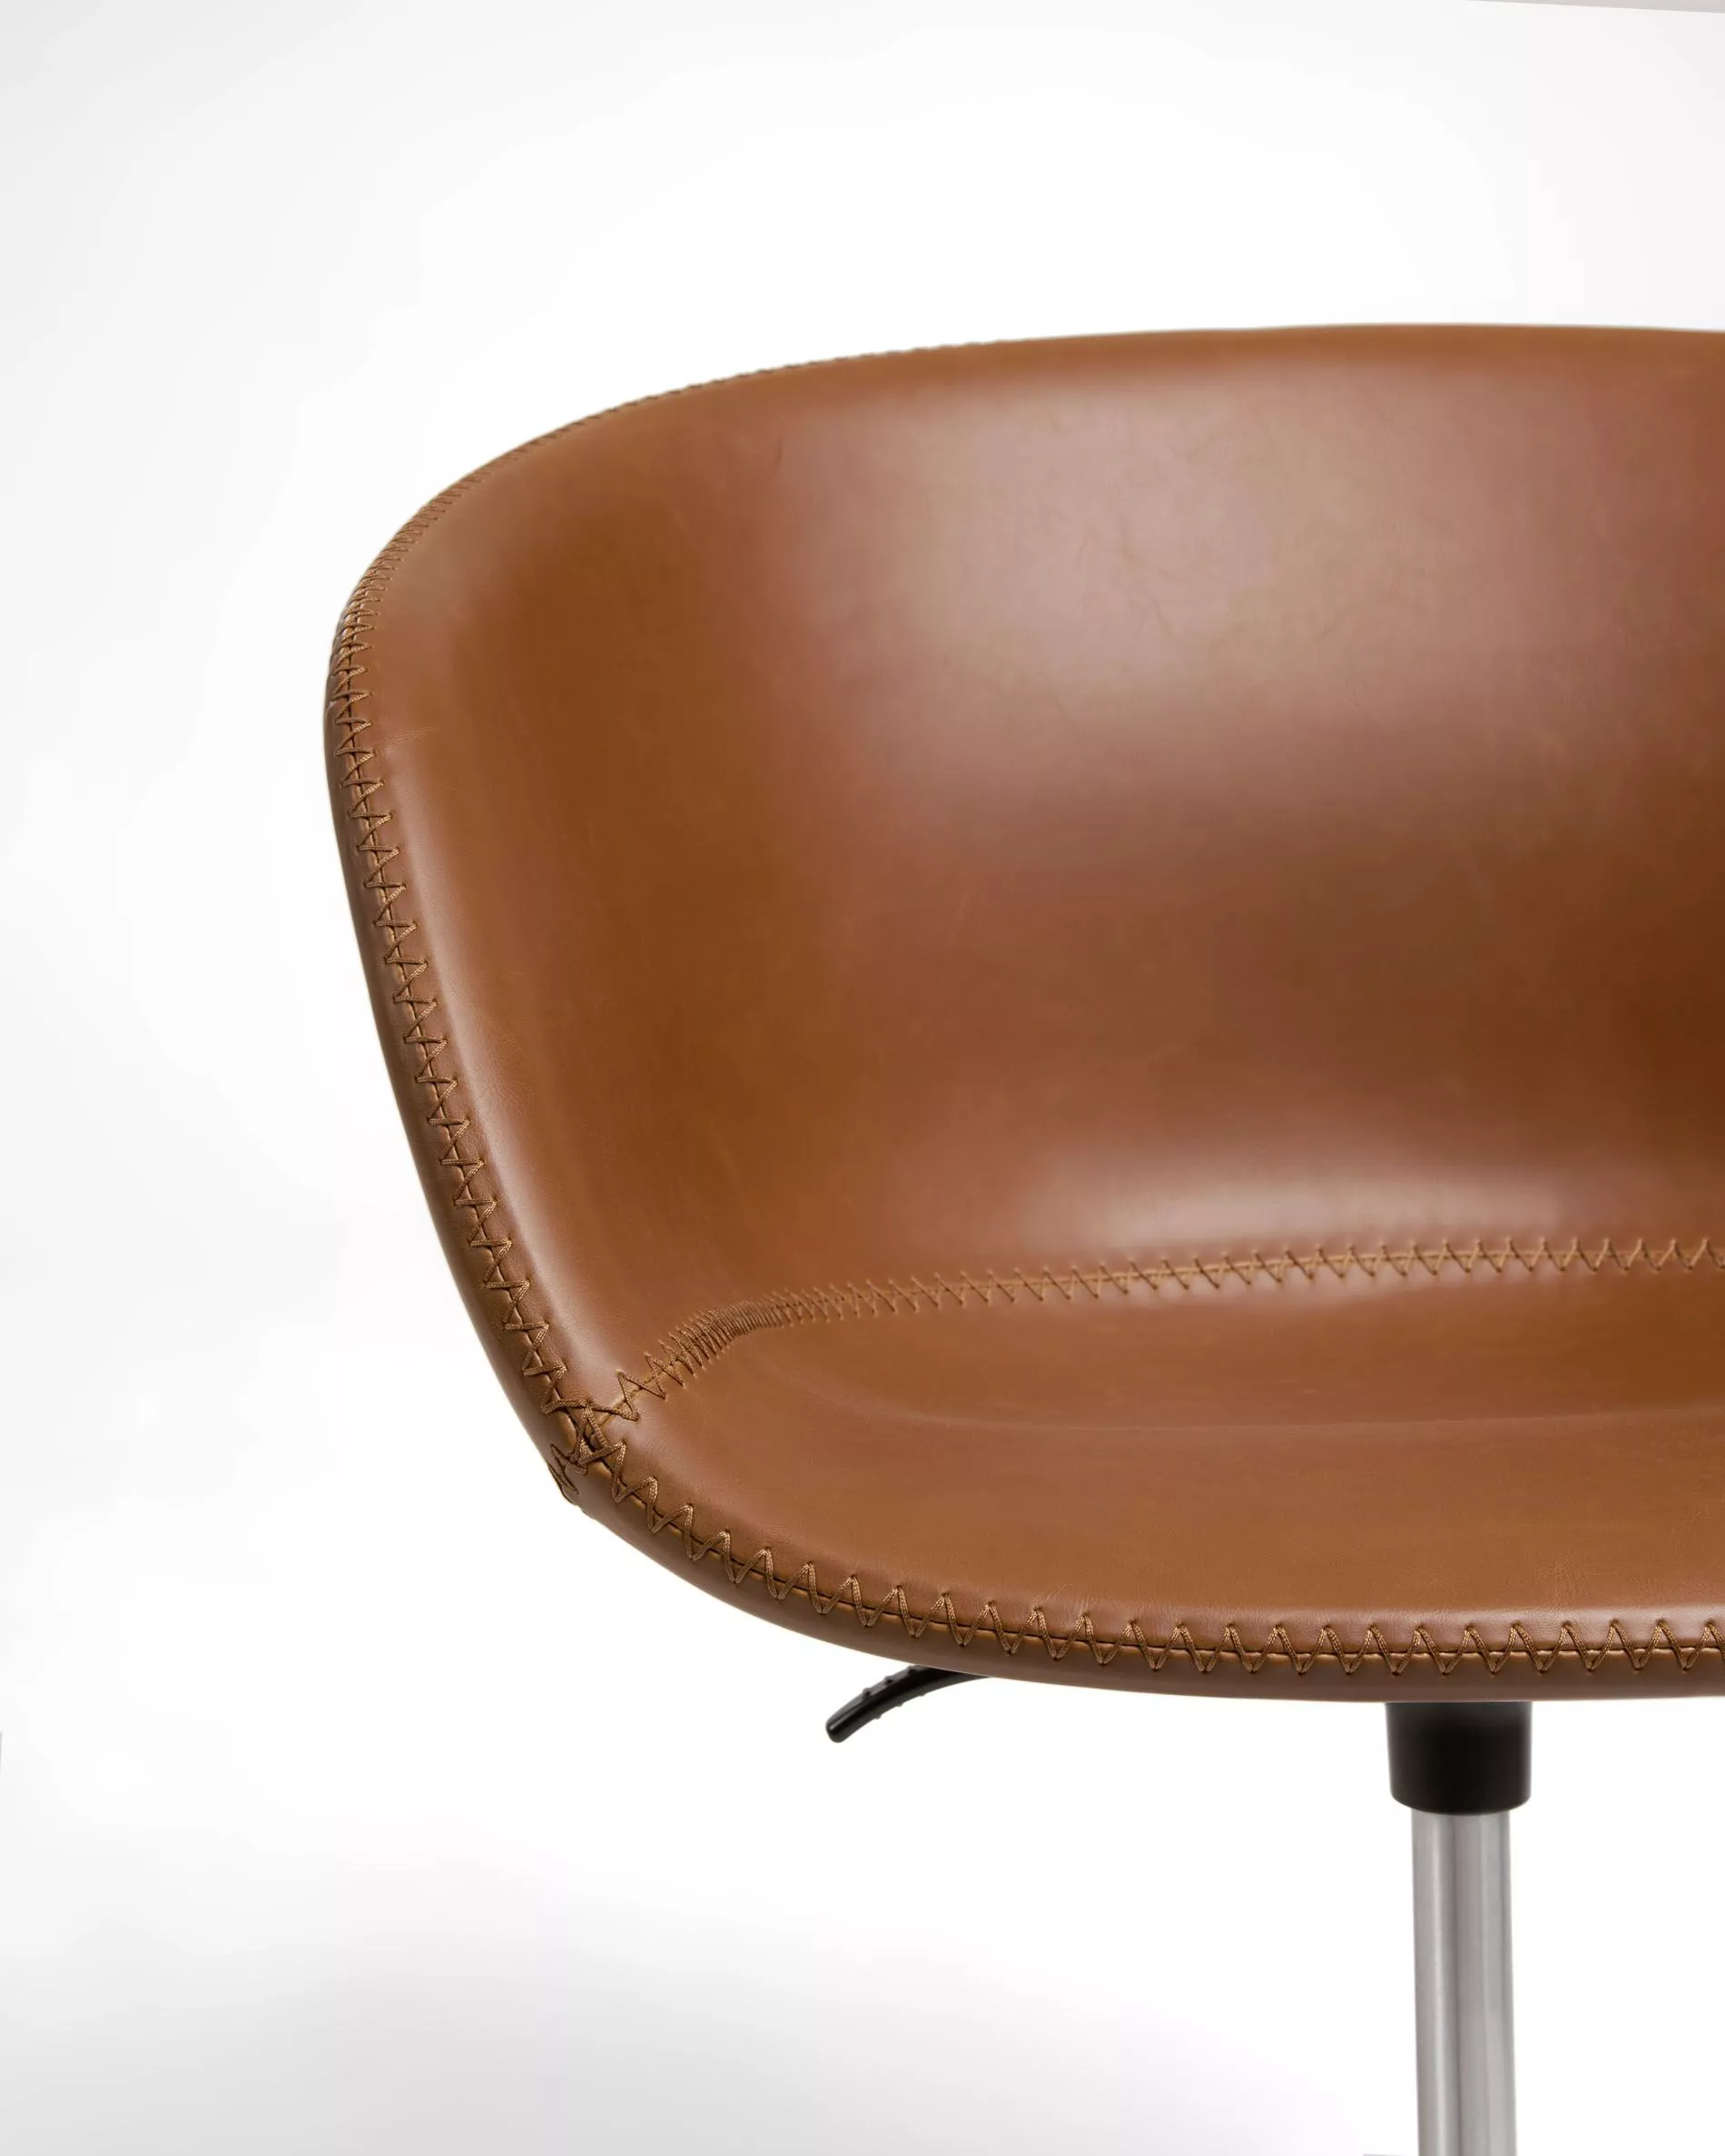 Офисное поворотное кресло La Forma Yvette коричневое